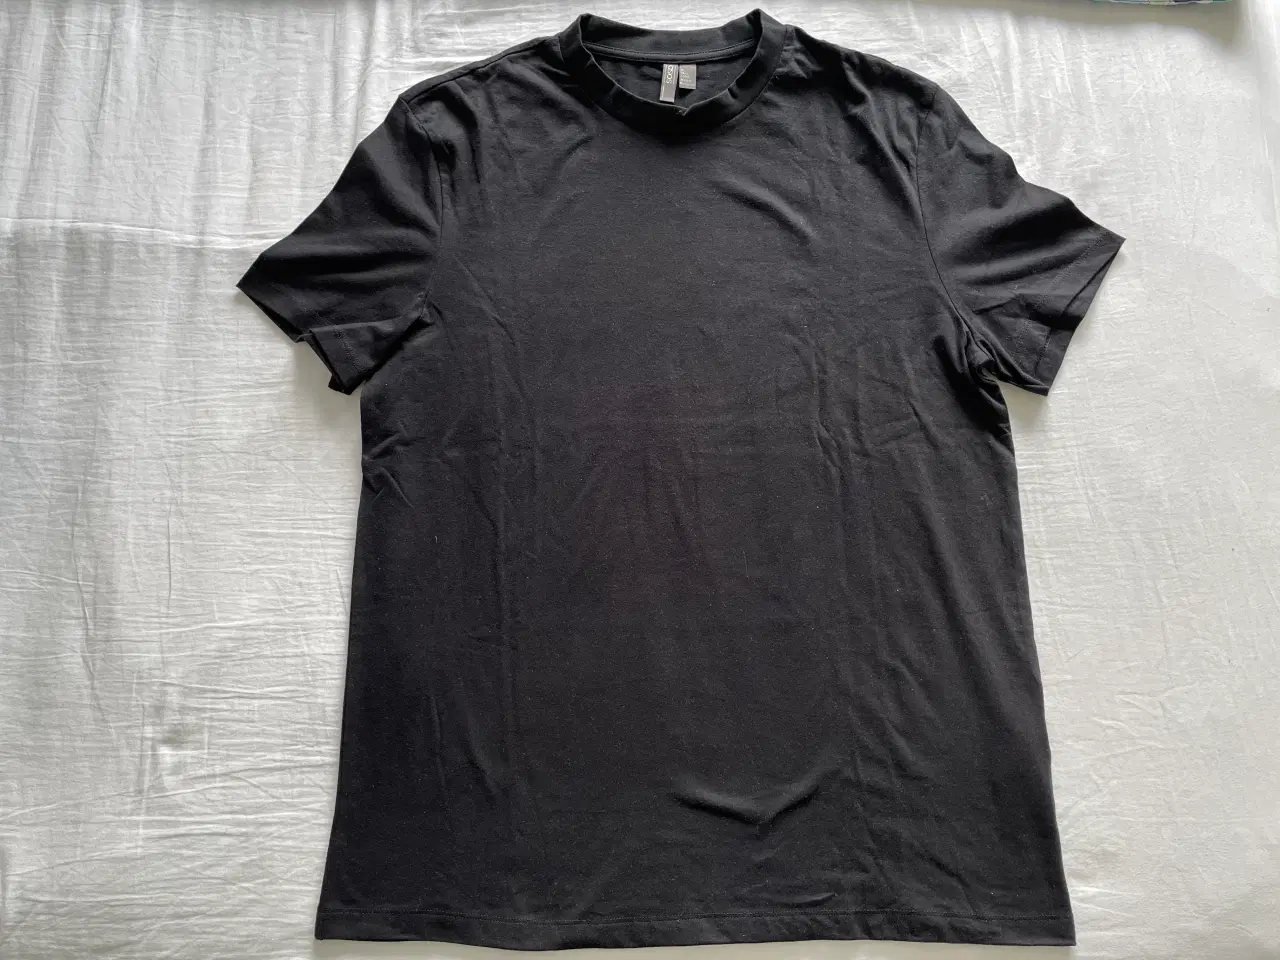 Billede 1 - Ny Sort T-Shirt fra ASOS aldrig brugt, Ubrugt